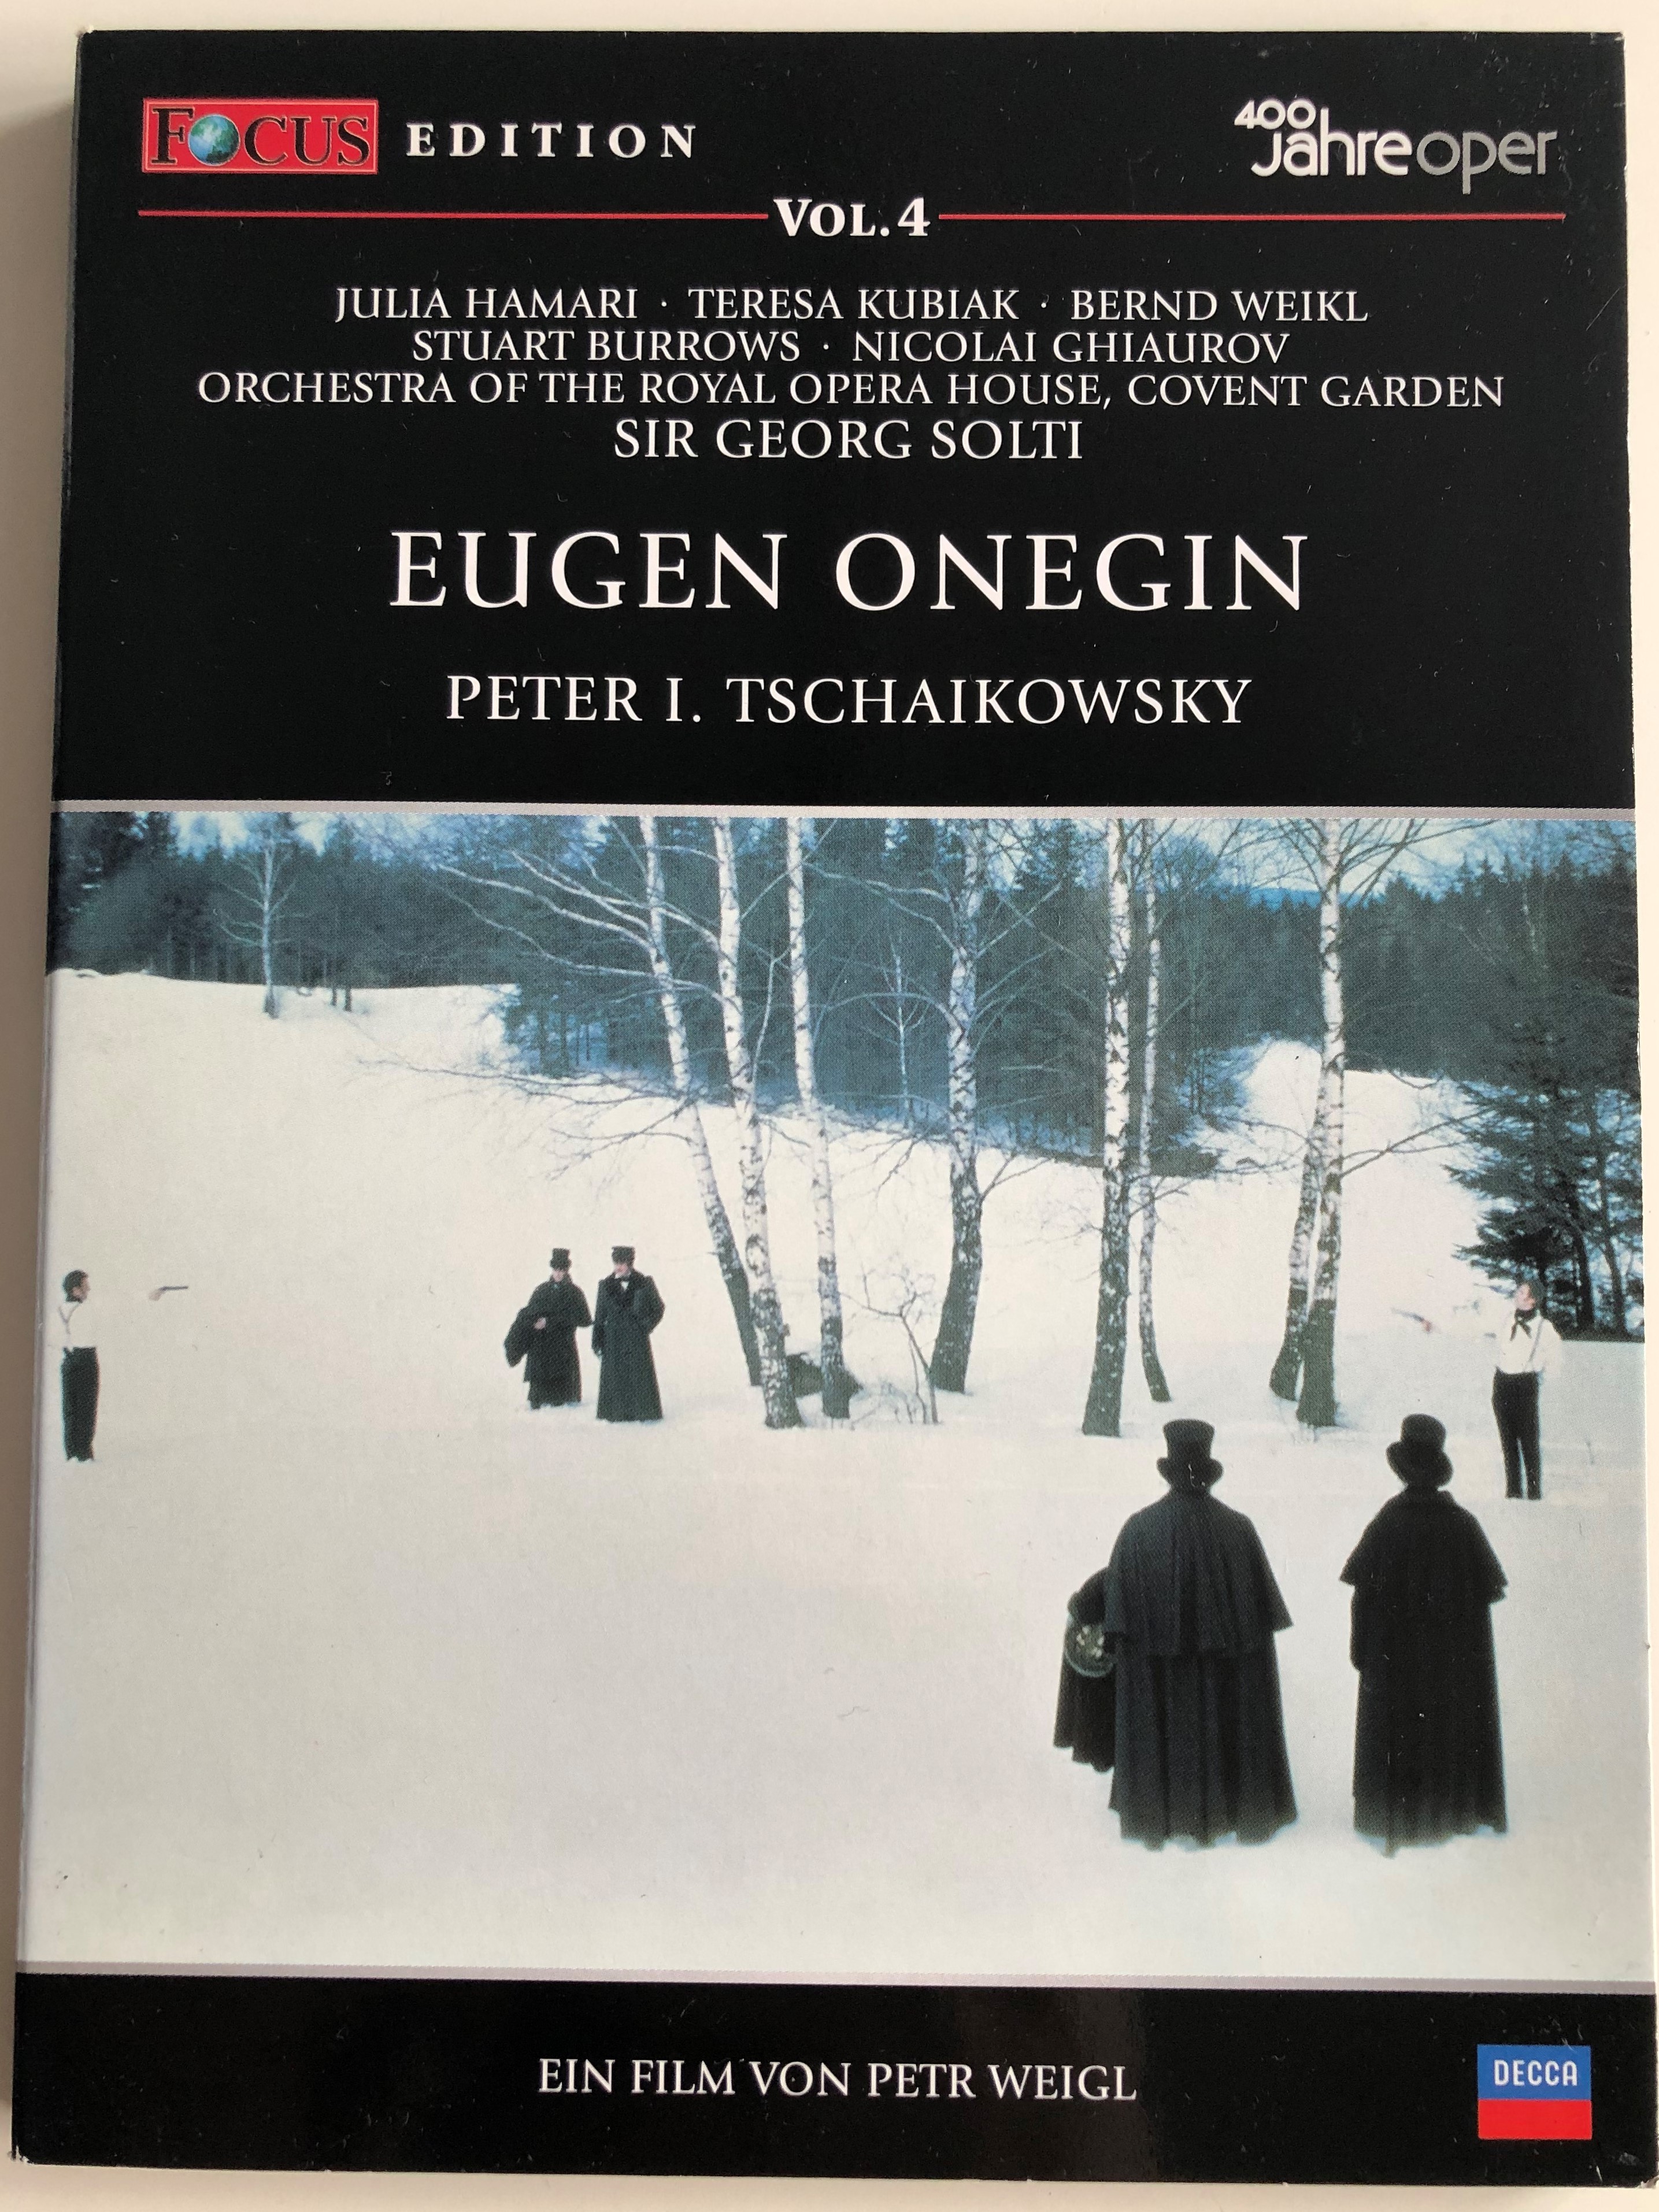 eugen-onegin-dvd-peter-i.-tschaikowsky-directed-by-petr-weigl-1.jpg